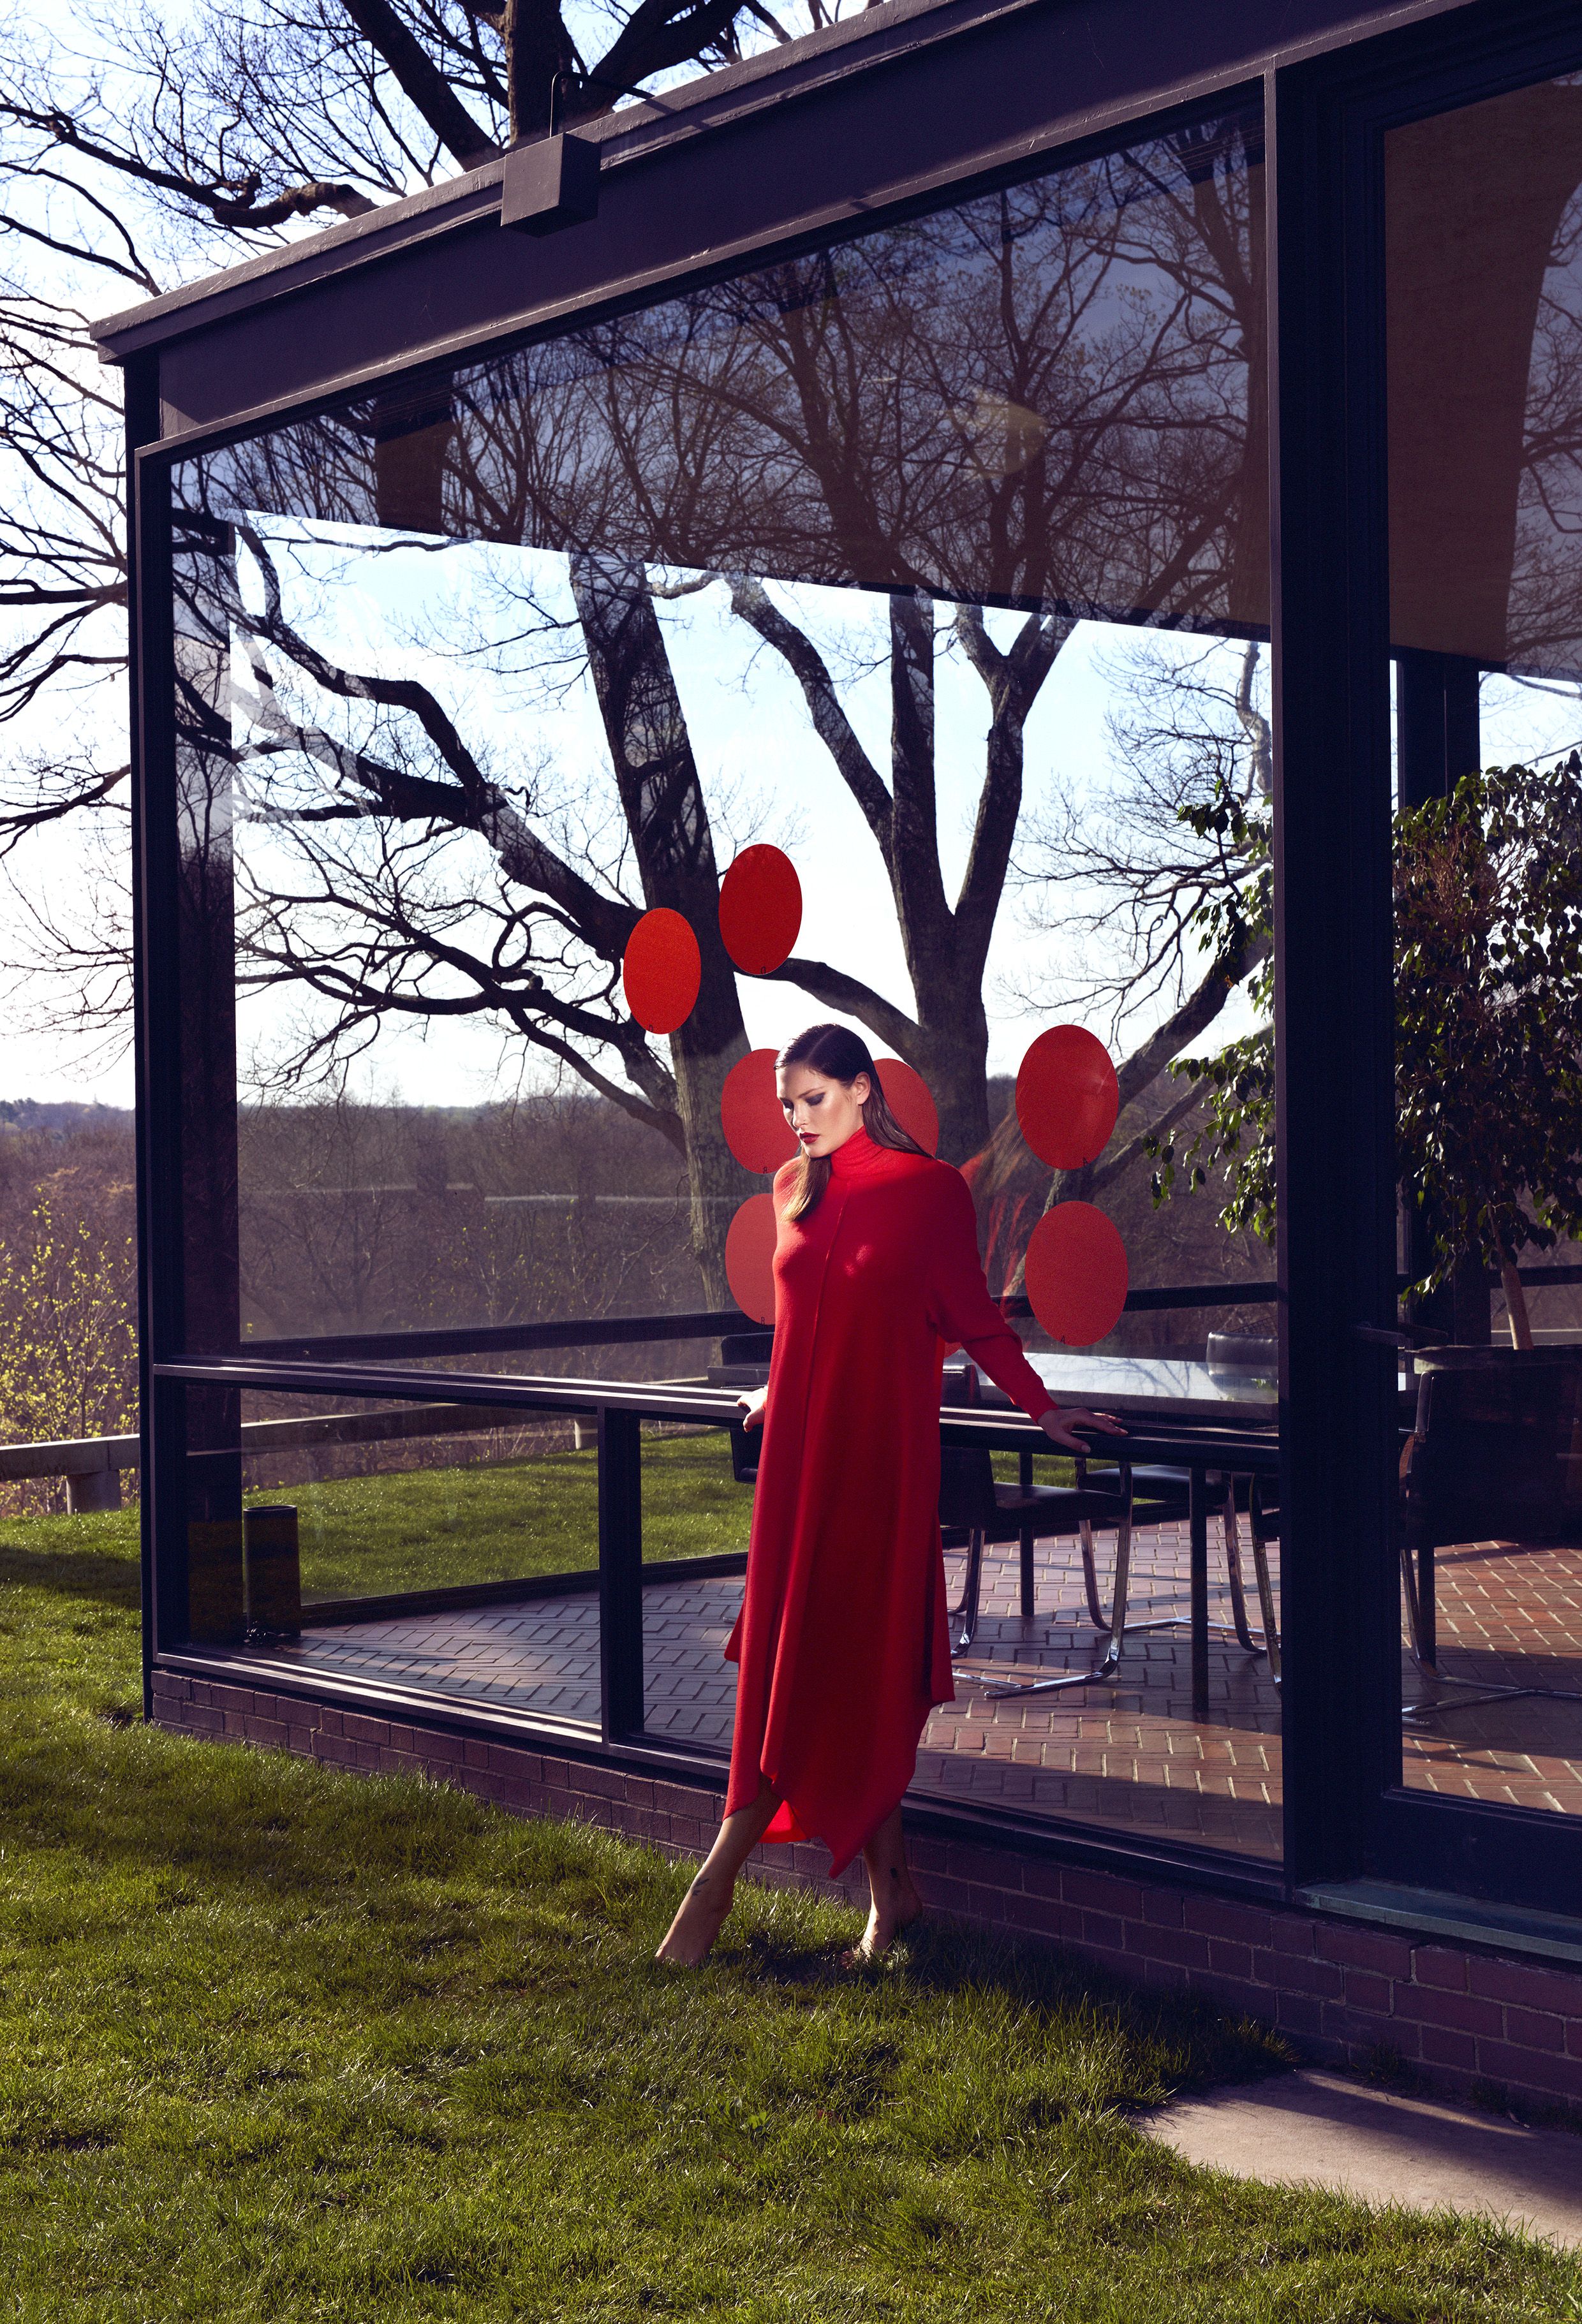 Yayoi Kusama Gives Philip Johnson's Glass House a Polka Dot Makeover